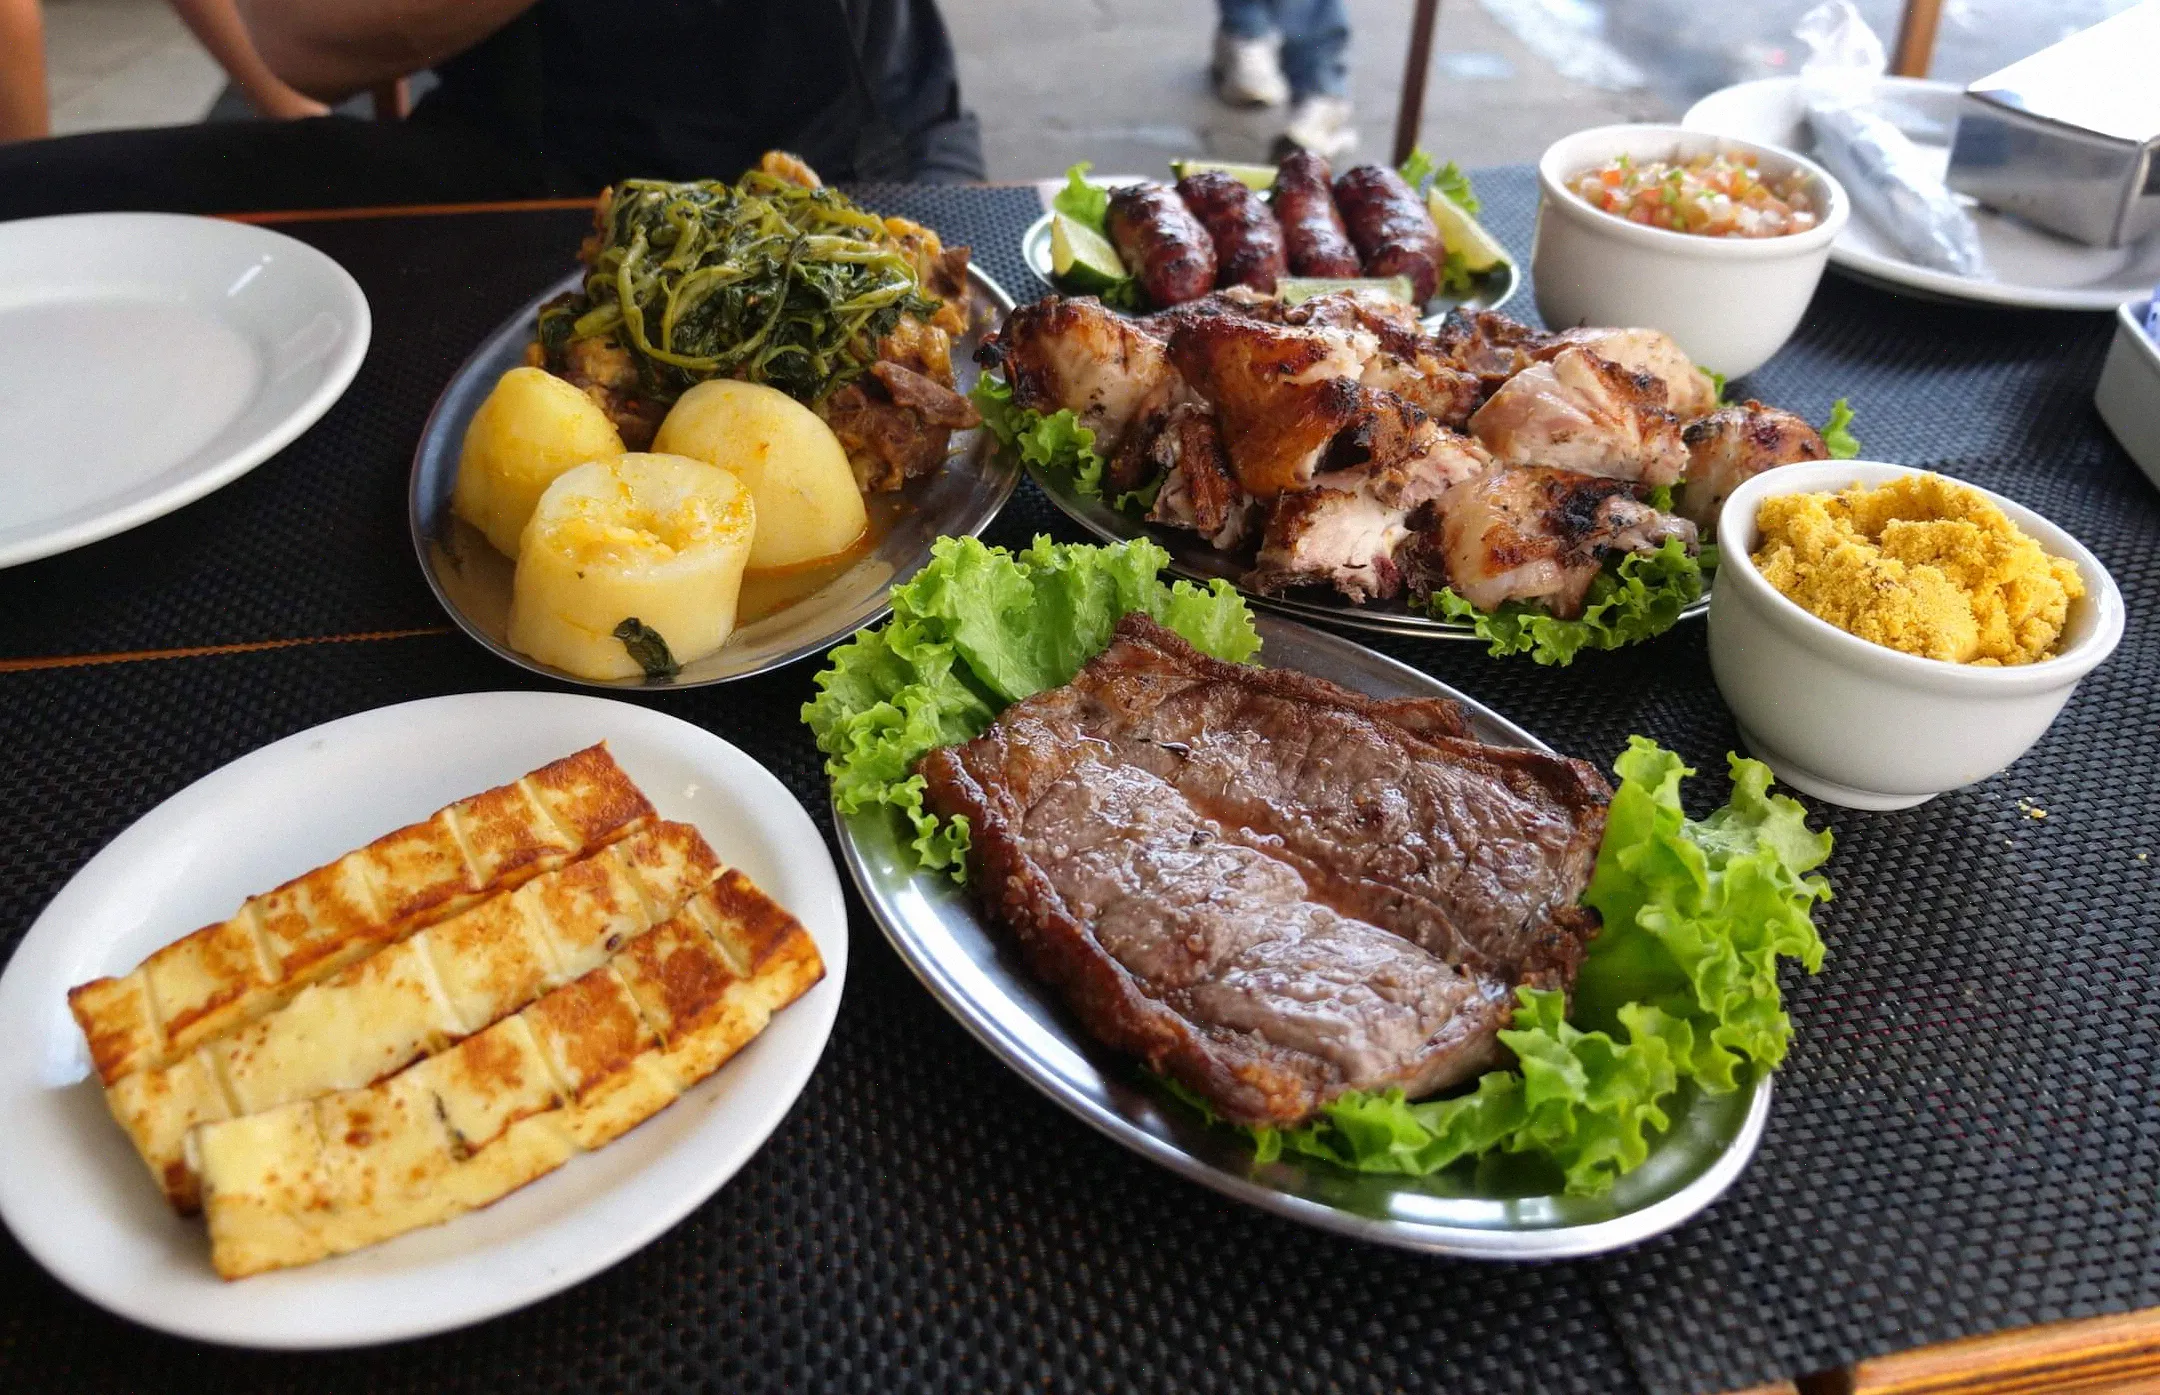 Vale la pena visitar Río solo por la comida, Bar Cafe Rex sirve deliciosas carnes, bocadillos y bebidas para su comida del mediodía.